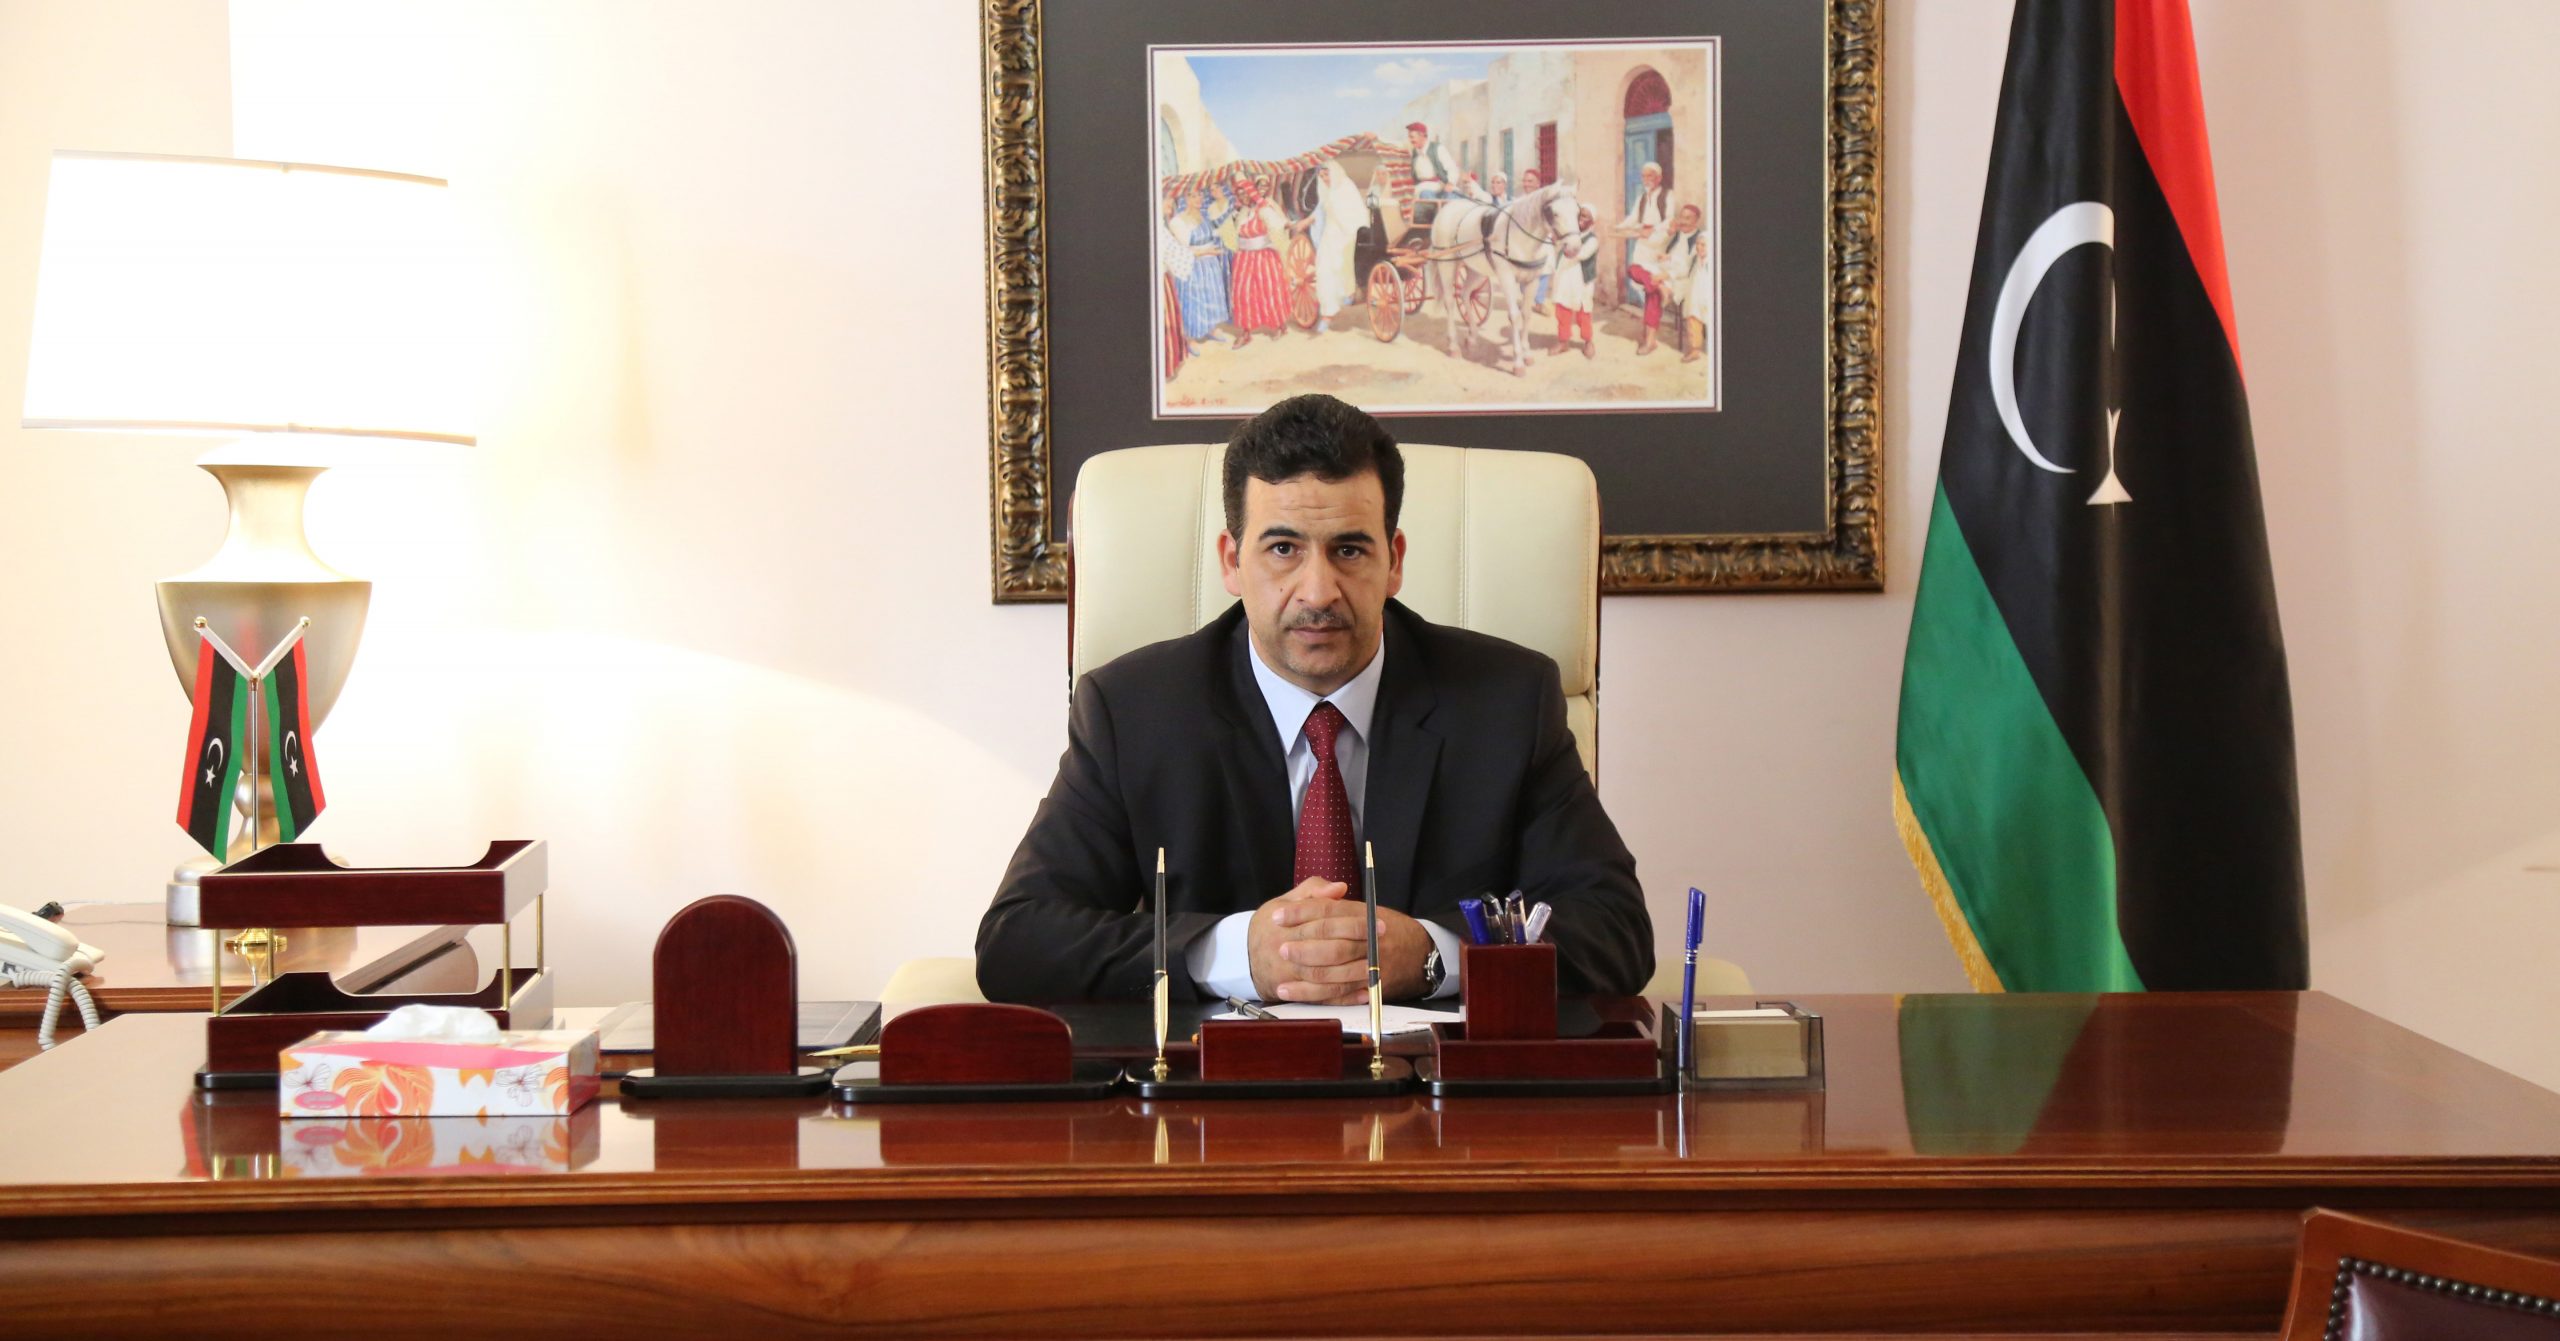 النويري يدعو لحل الأزمة الليبية بقيادة وطنية بعد استقالة باتيلي